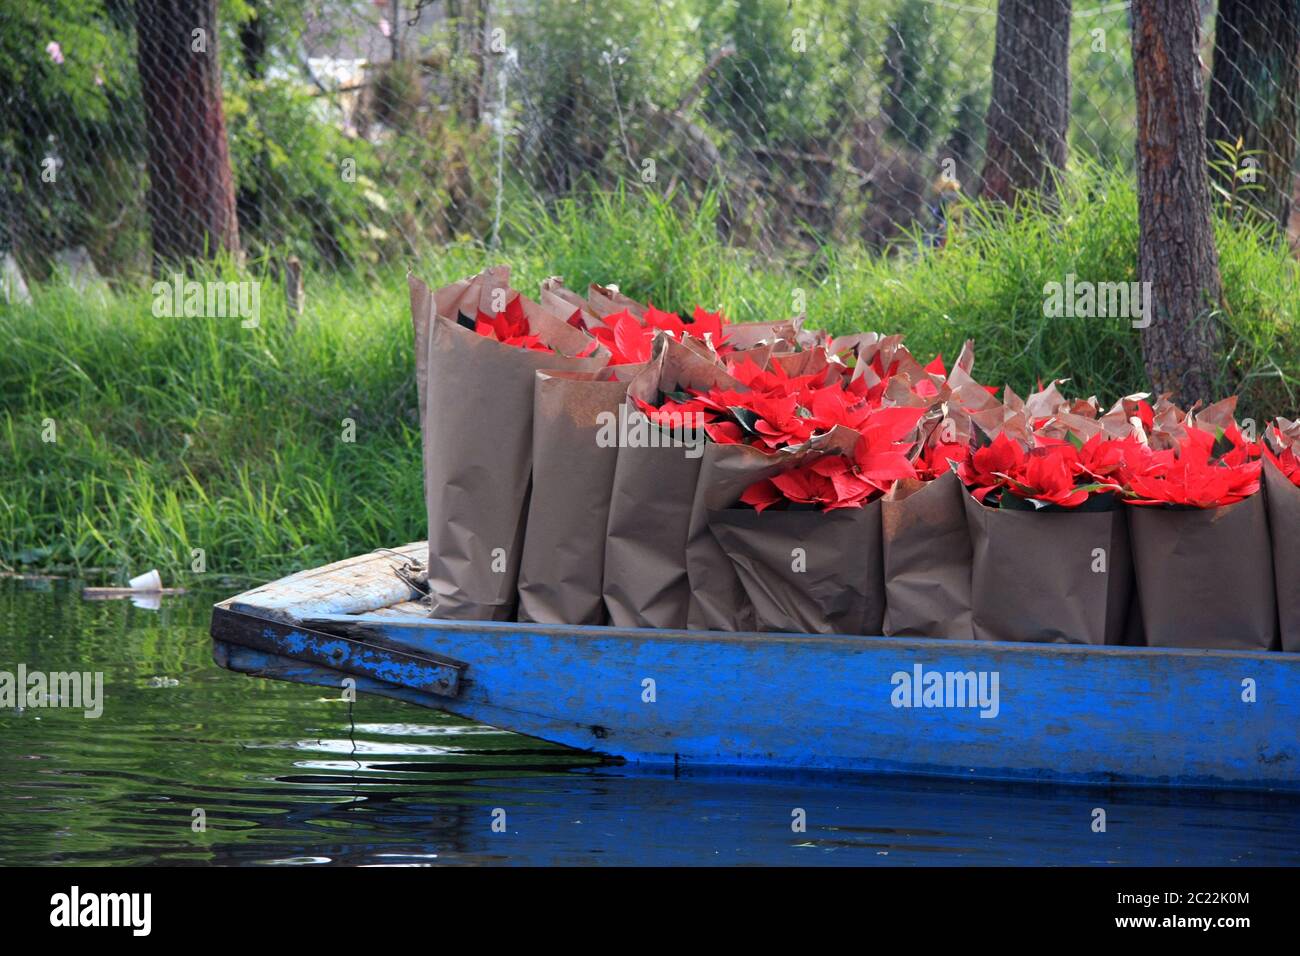 Weihnachtssterne Pflanzen und Blumen in braunen Papiertüten auf einem Holzboot, das auf den xochimilco Kanälen, Mexiko-Stadt, Mexiko, geliefert wird Stockfoto